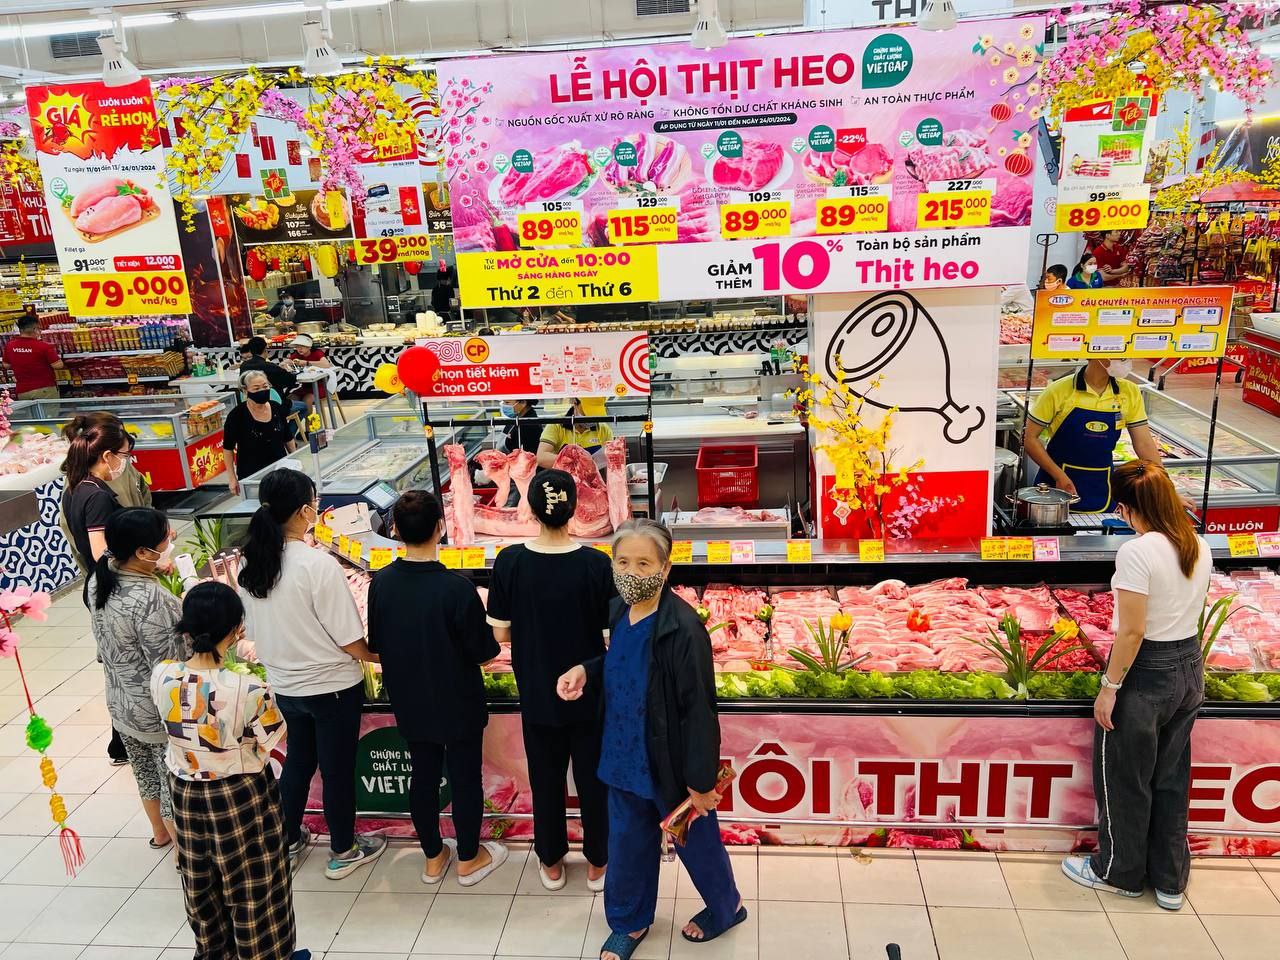 1 Người tiêu dùng hào hứng mua thịt heo tại chương trình Lễ hội thịt heo.